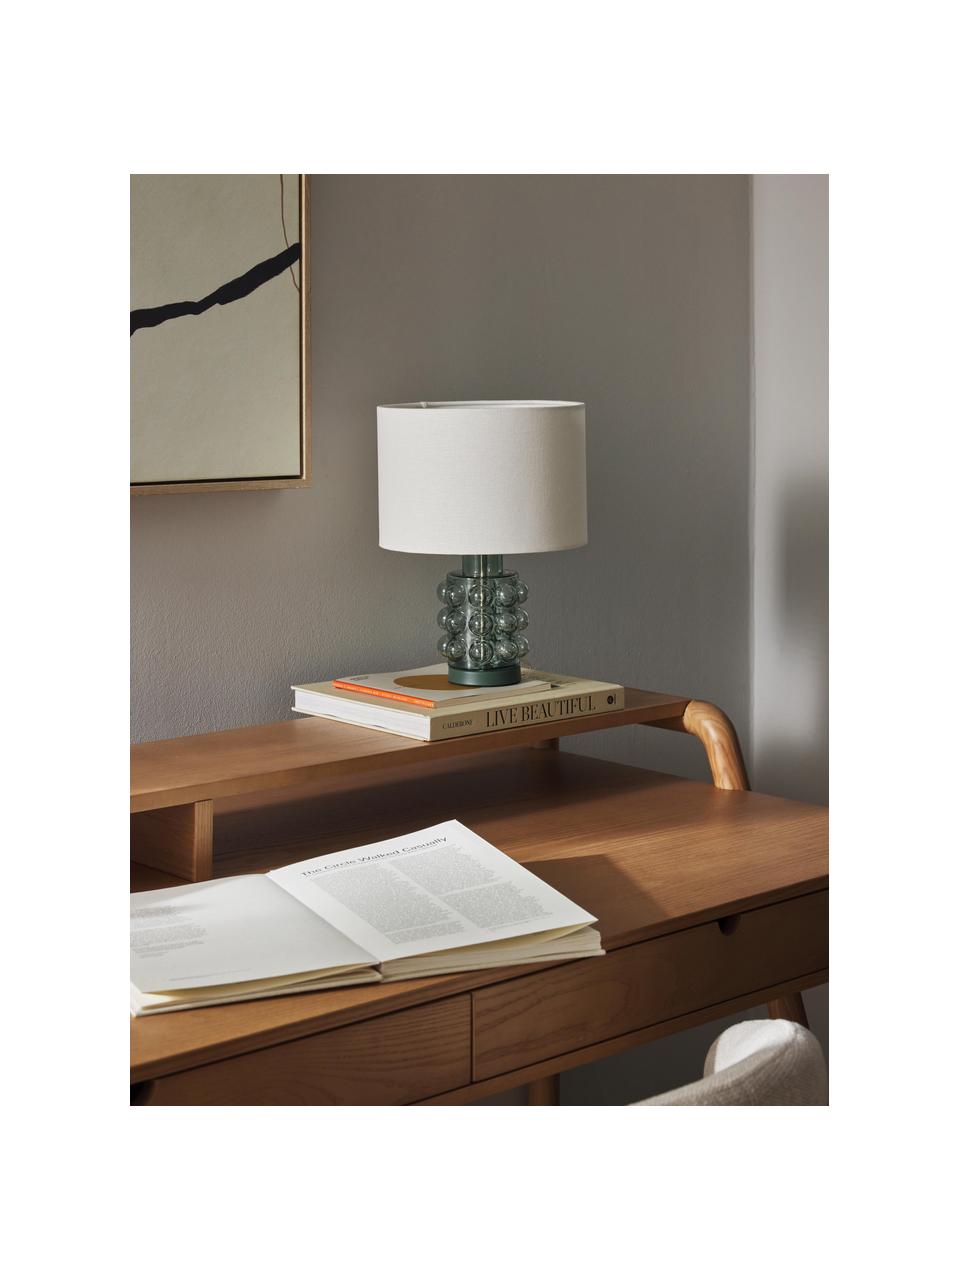 Lámpara de mesa pequeña de vidrio Olyve, Pantalla: 60% lino, 40% algodón, Cable: plástico, Blanco, verde salvia, Ø 23 x Al 31 cm